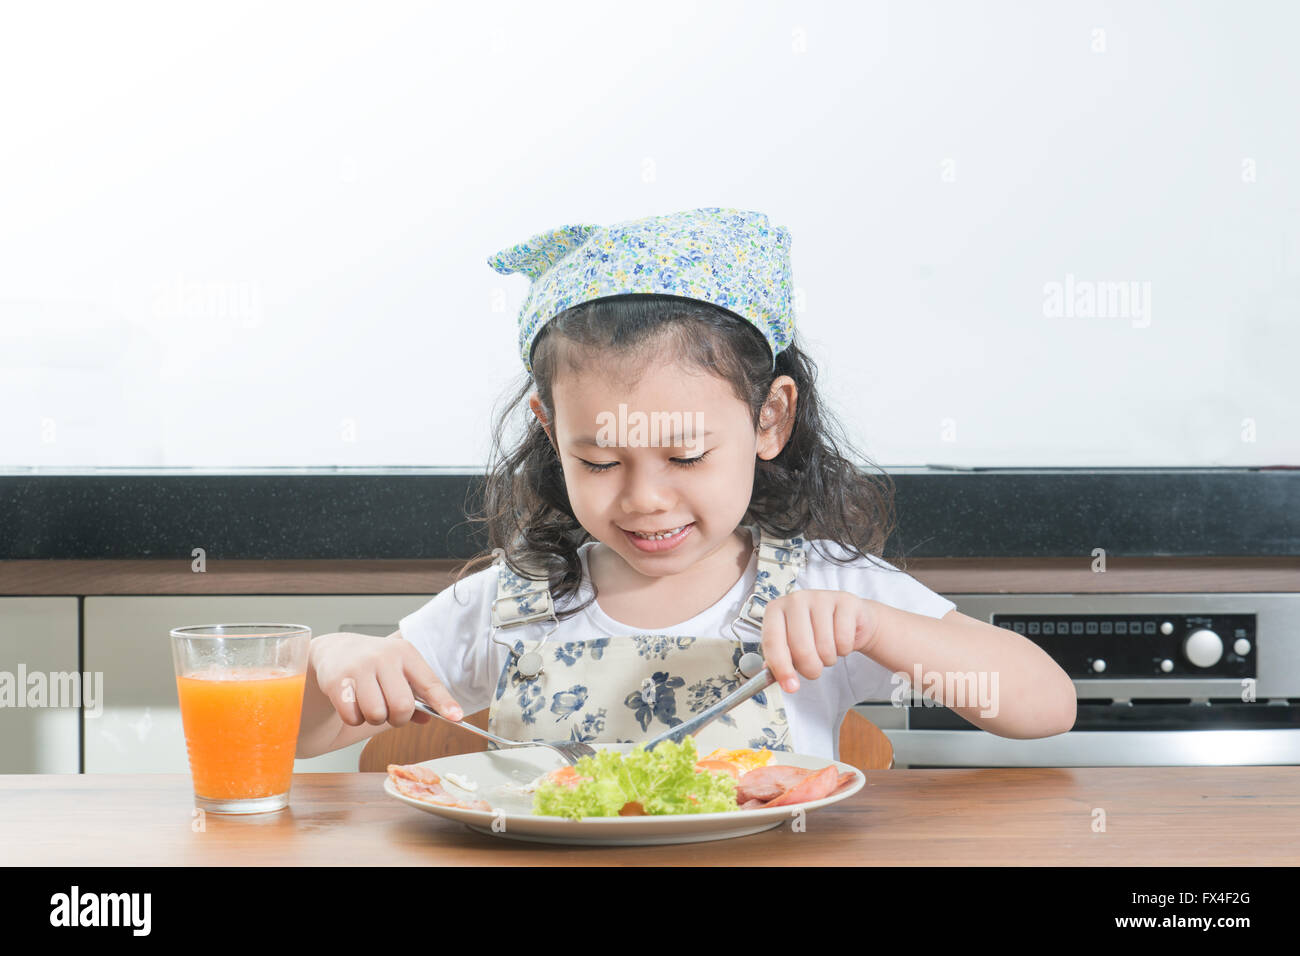 La famille, les enfants et les gens heureux concept - Asian girl enfant de manger le petit déjeuner américain à l'accueil Banque D'Images